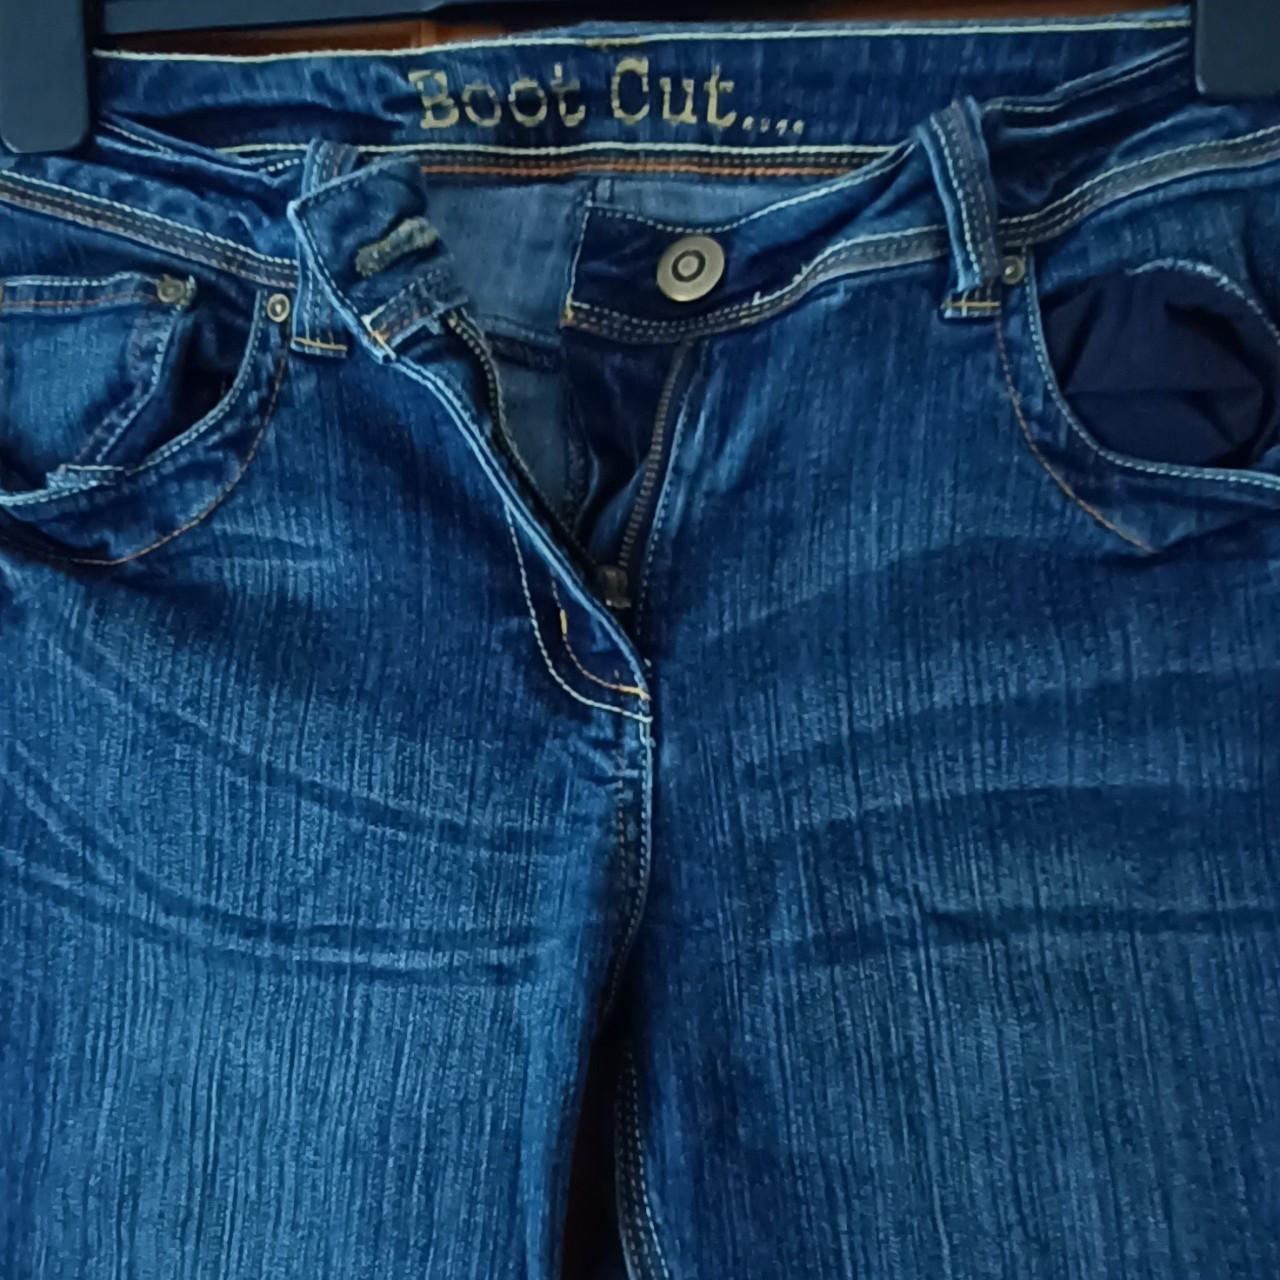 Women's denim jeans nice design on pockets - Depop